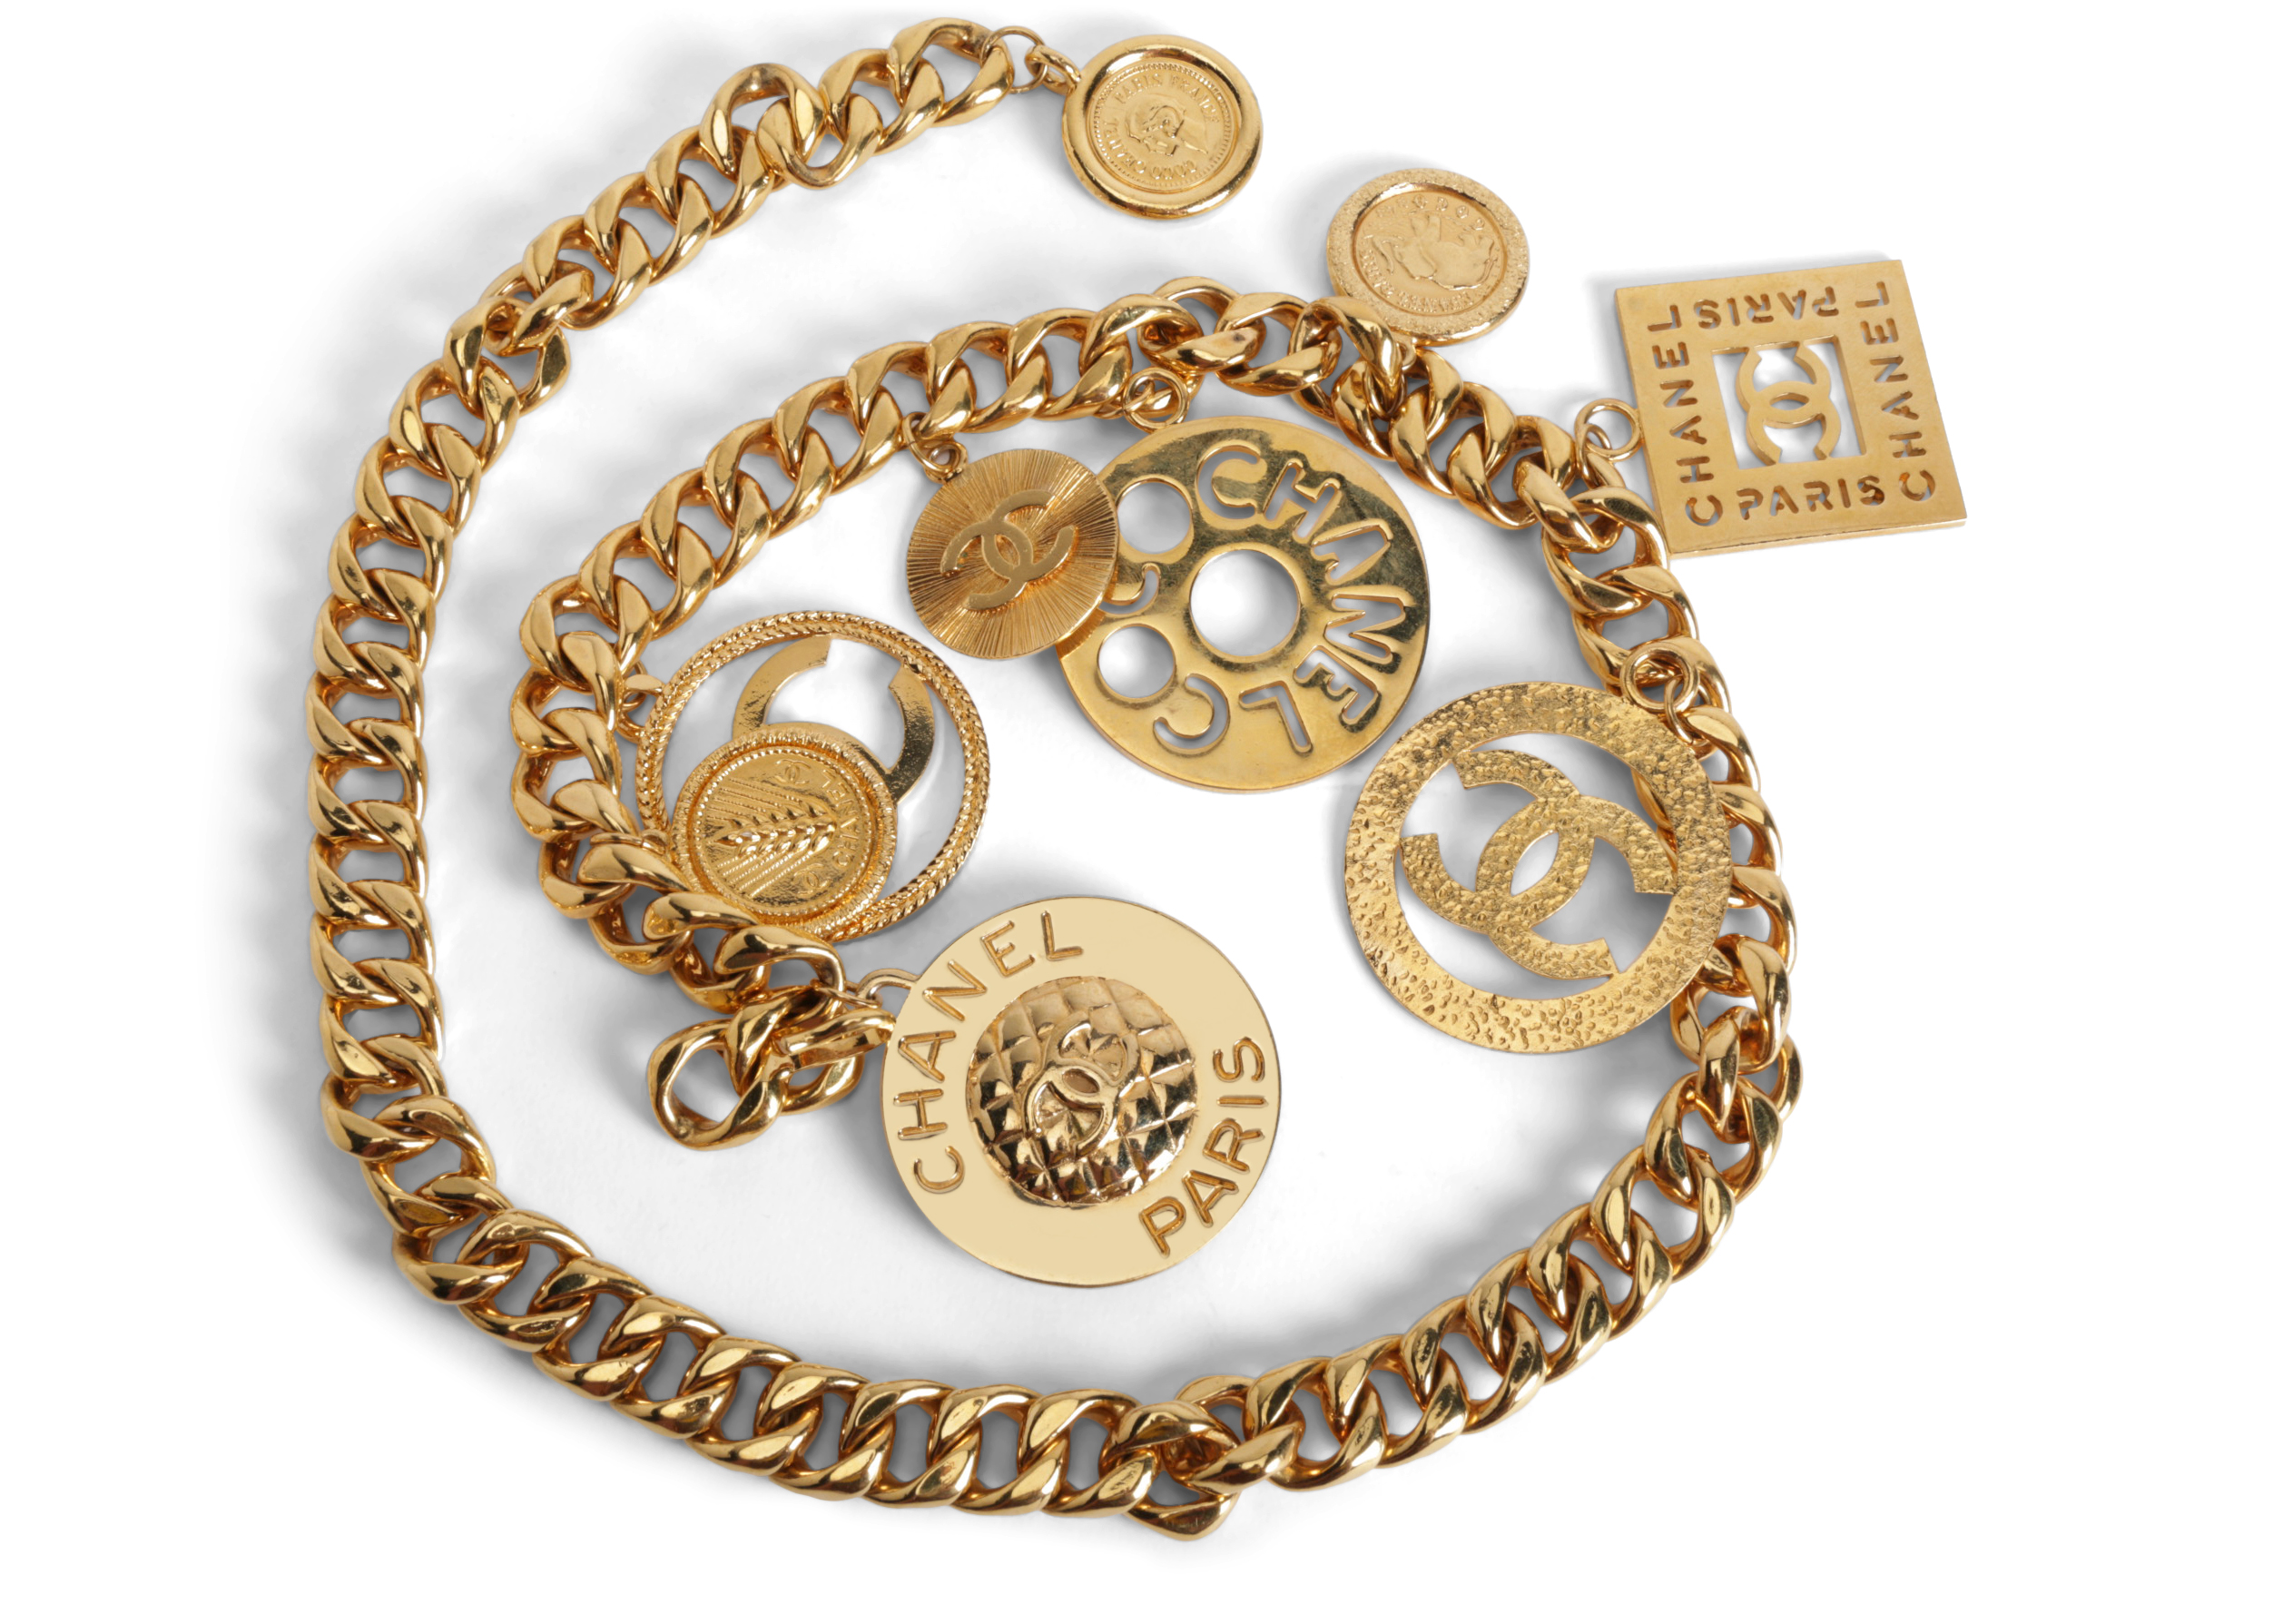 CHANEL  Jewelry  Authentic Nib Chanel Enamel Charm Necklace  Poshmark